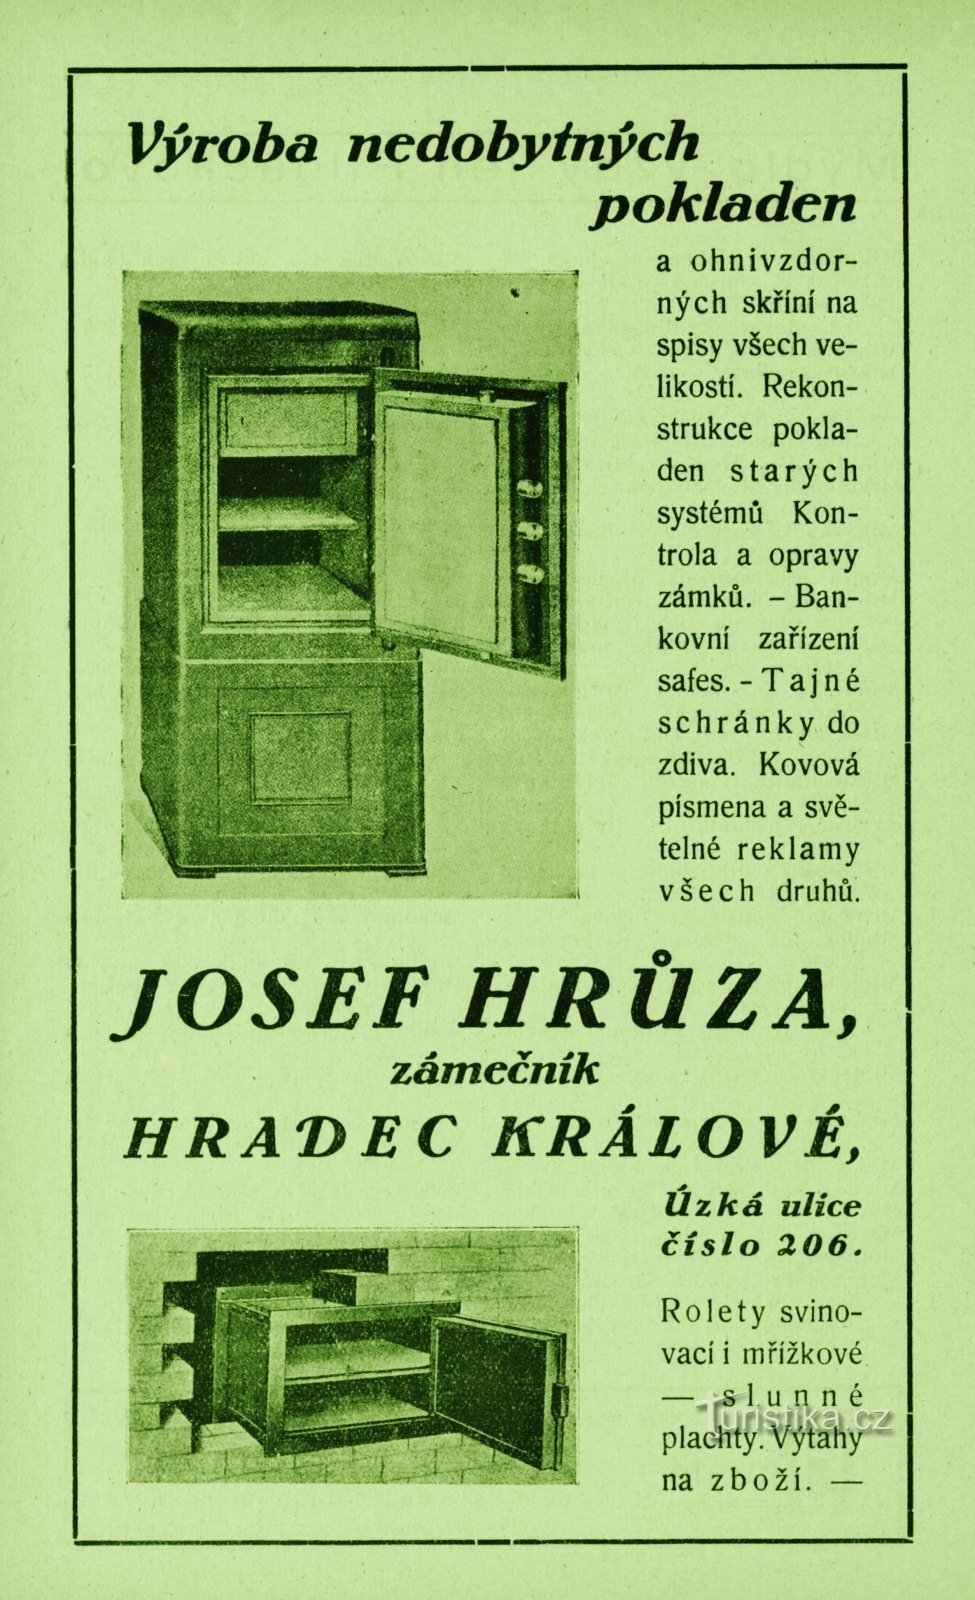 Josef Hrůzan lukkosepänpajan nykyaikainen mainos vuodelta 1931